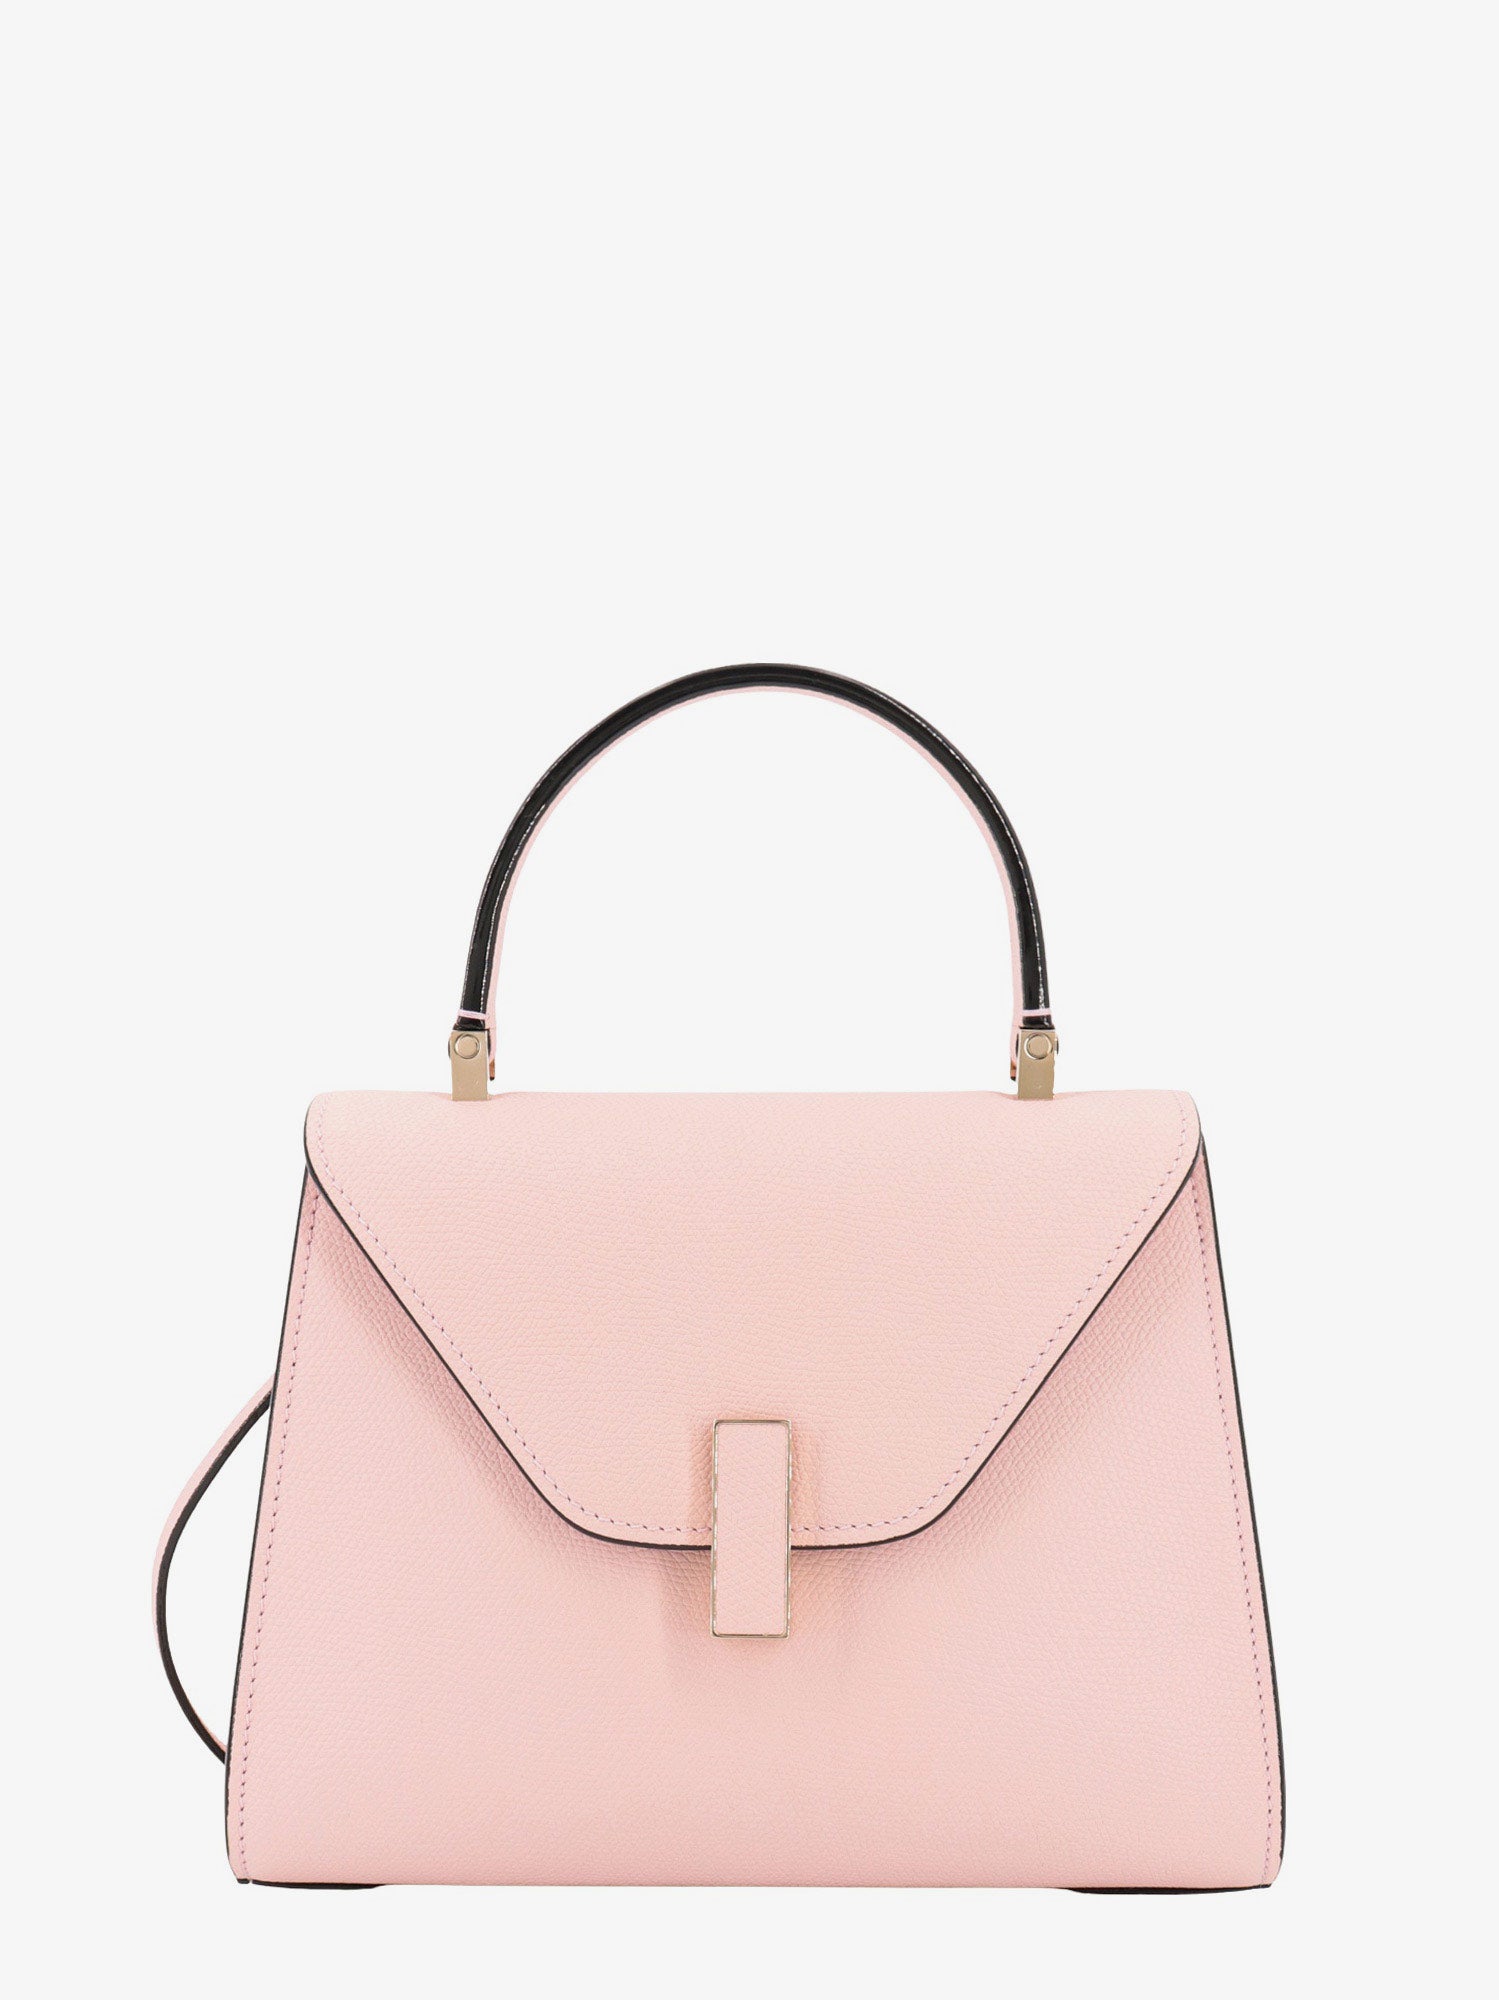 Valextra Handbag In Pink